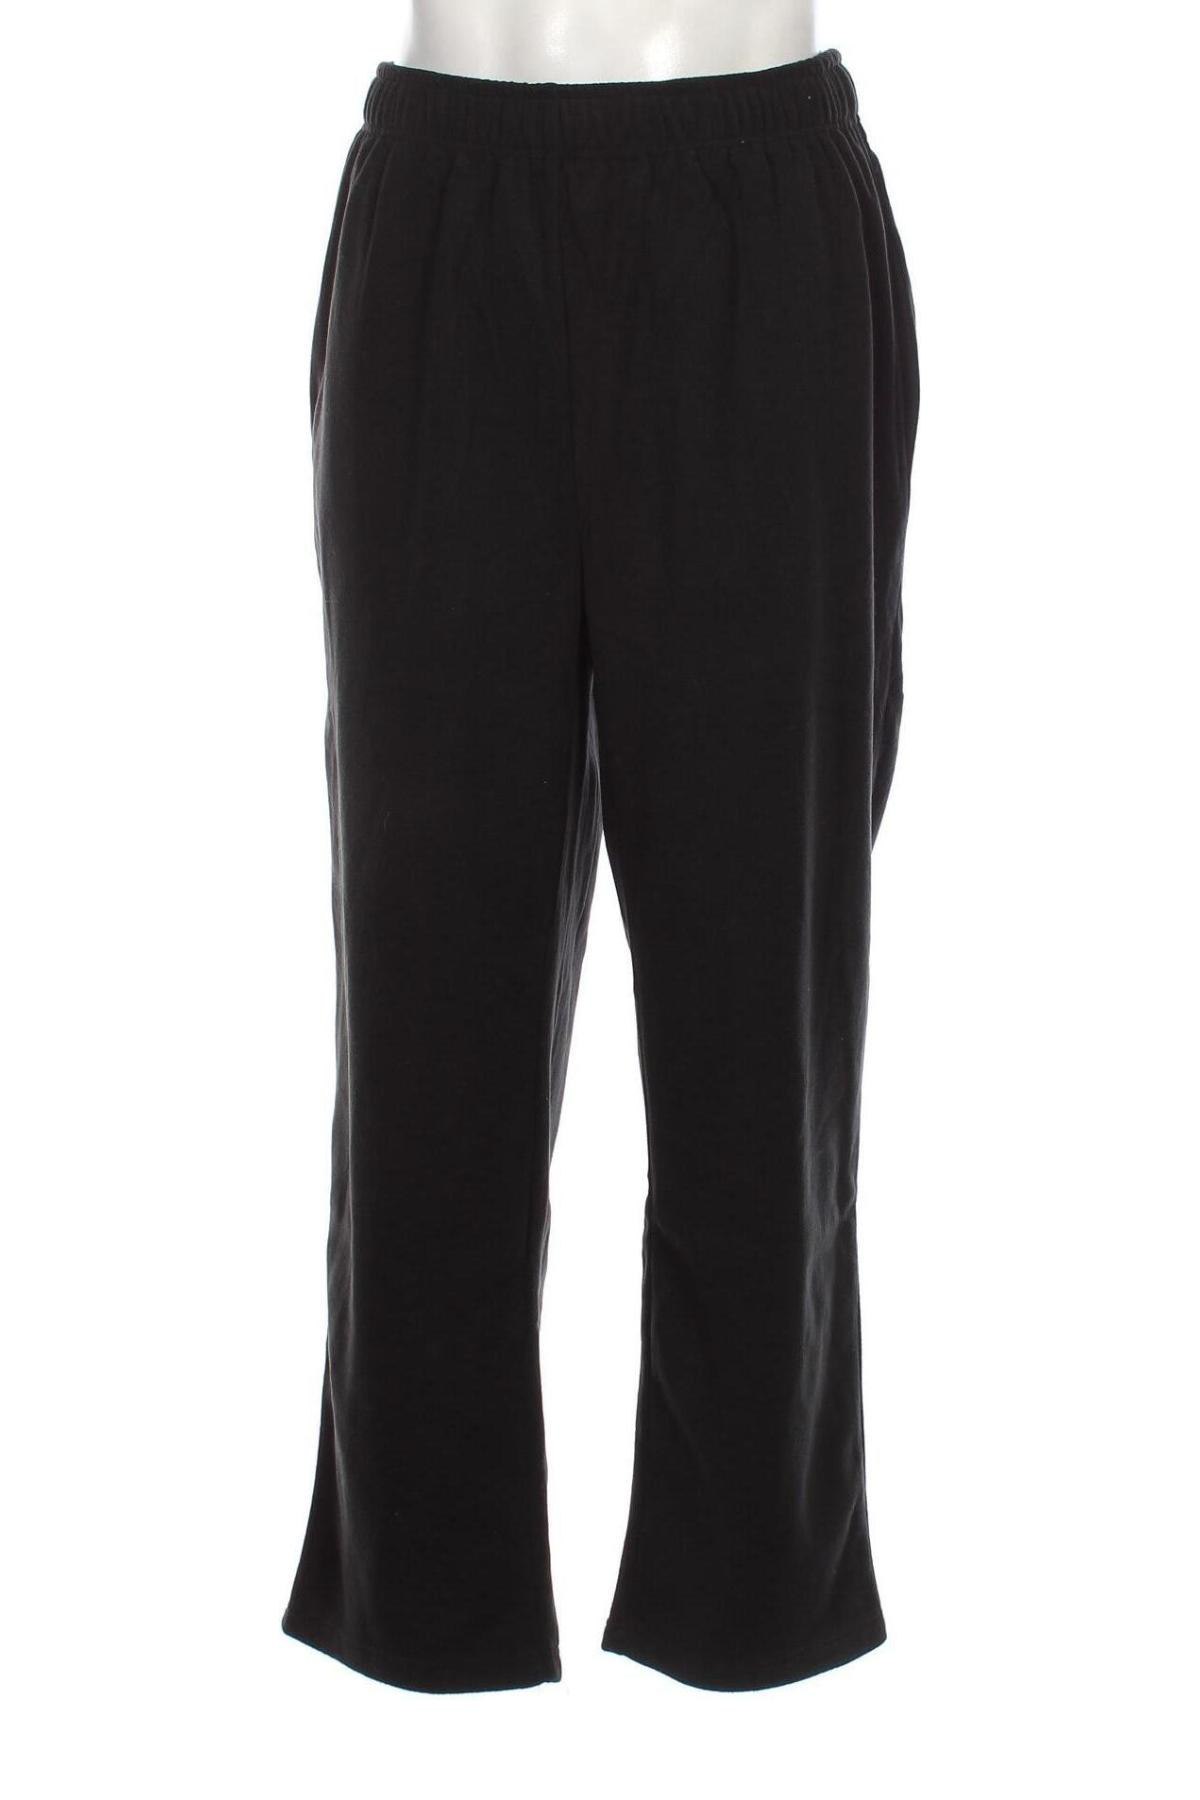 Pantaloni polar de bărbați Euro Tops, Mărime XL, Culoare Gri, Preț 95,39 Lei